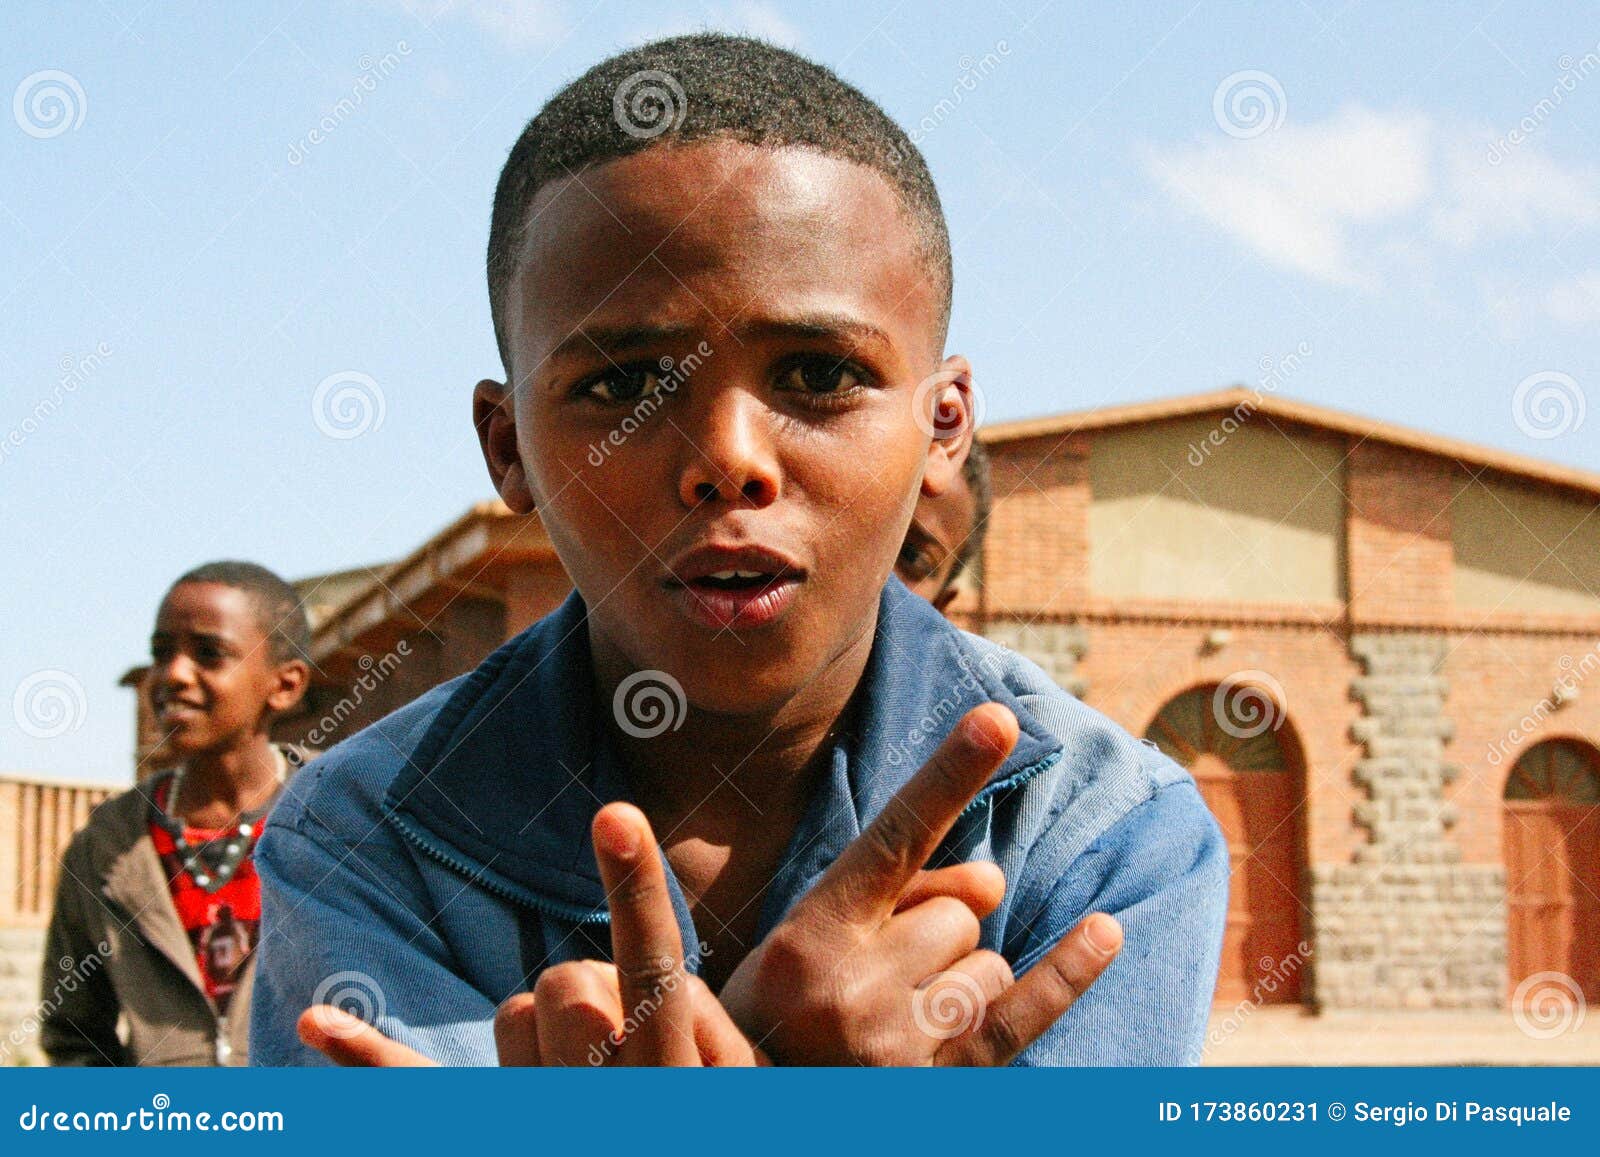 Eritrean Boy Makes the Sign of Horns, Asmara, Eritrea Editorial Photo ...